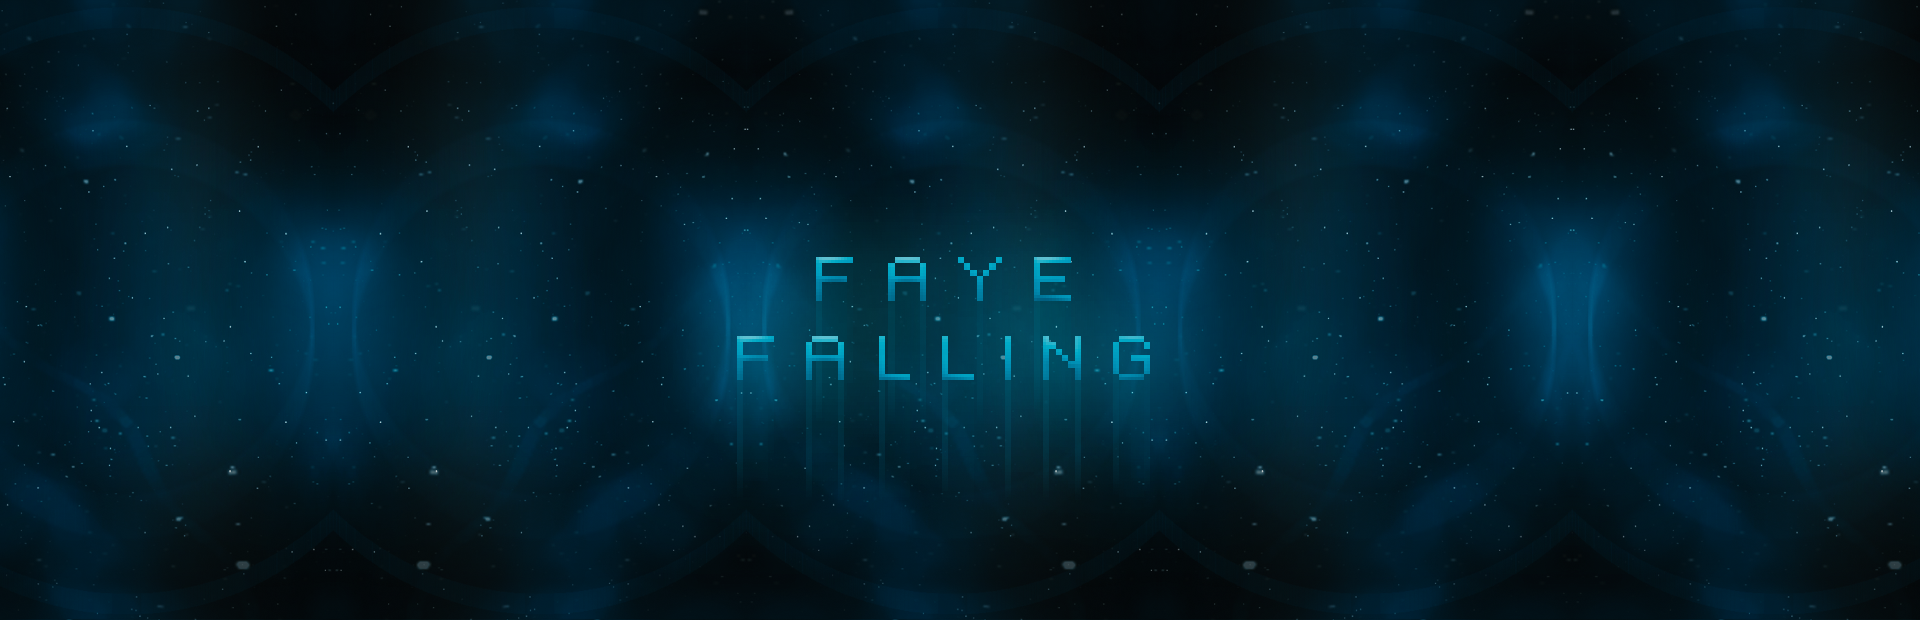 Faye Falling